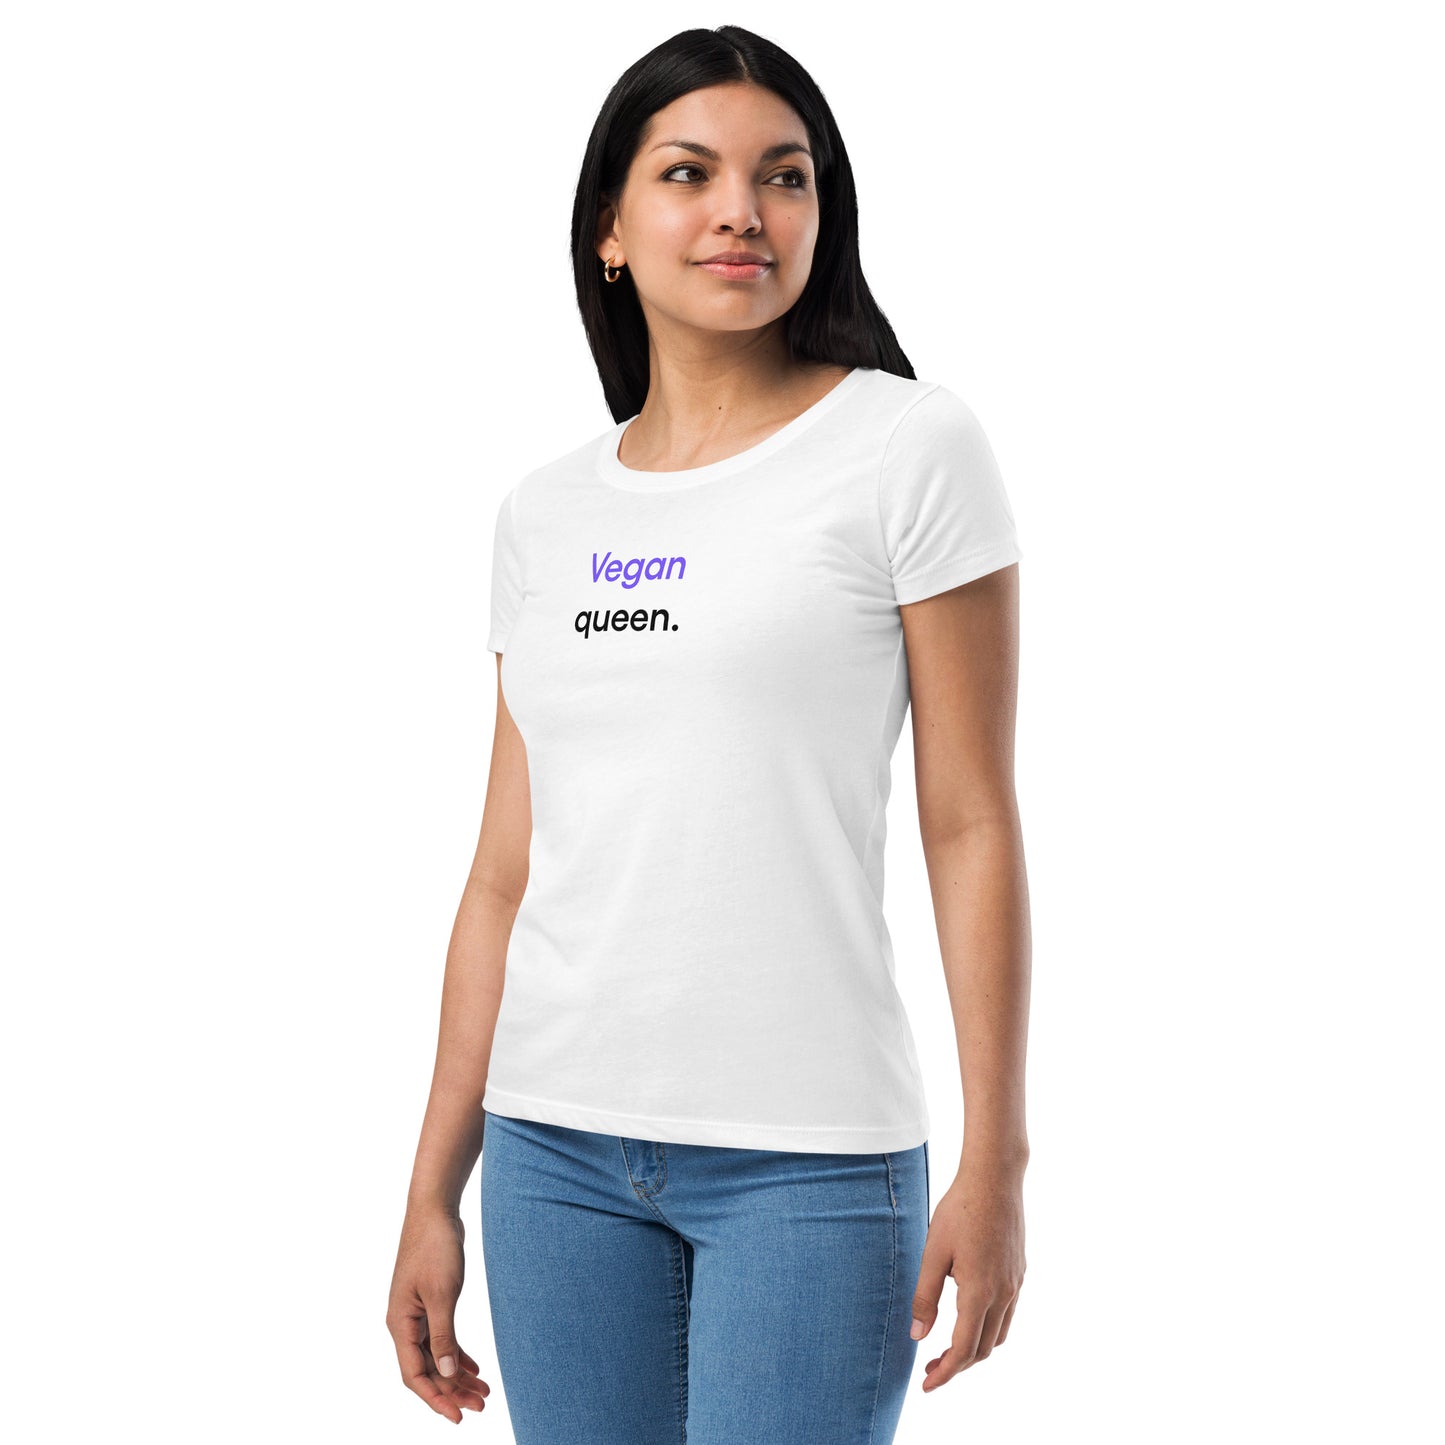 Vegan queen | Women’s fitted t-shirt